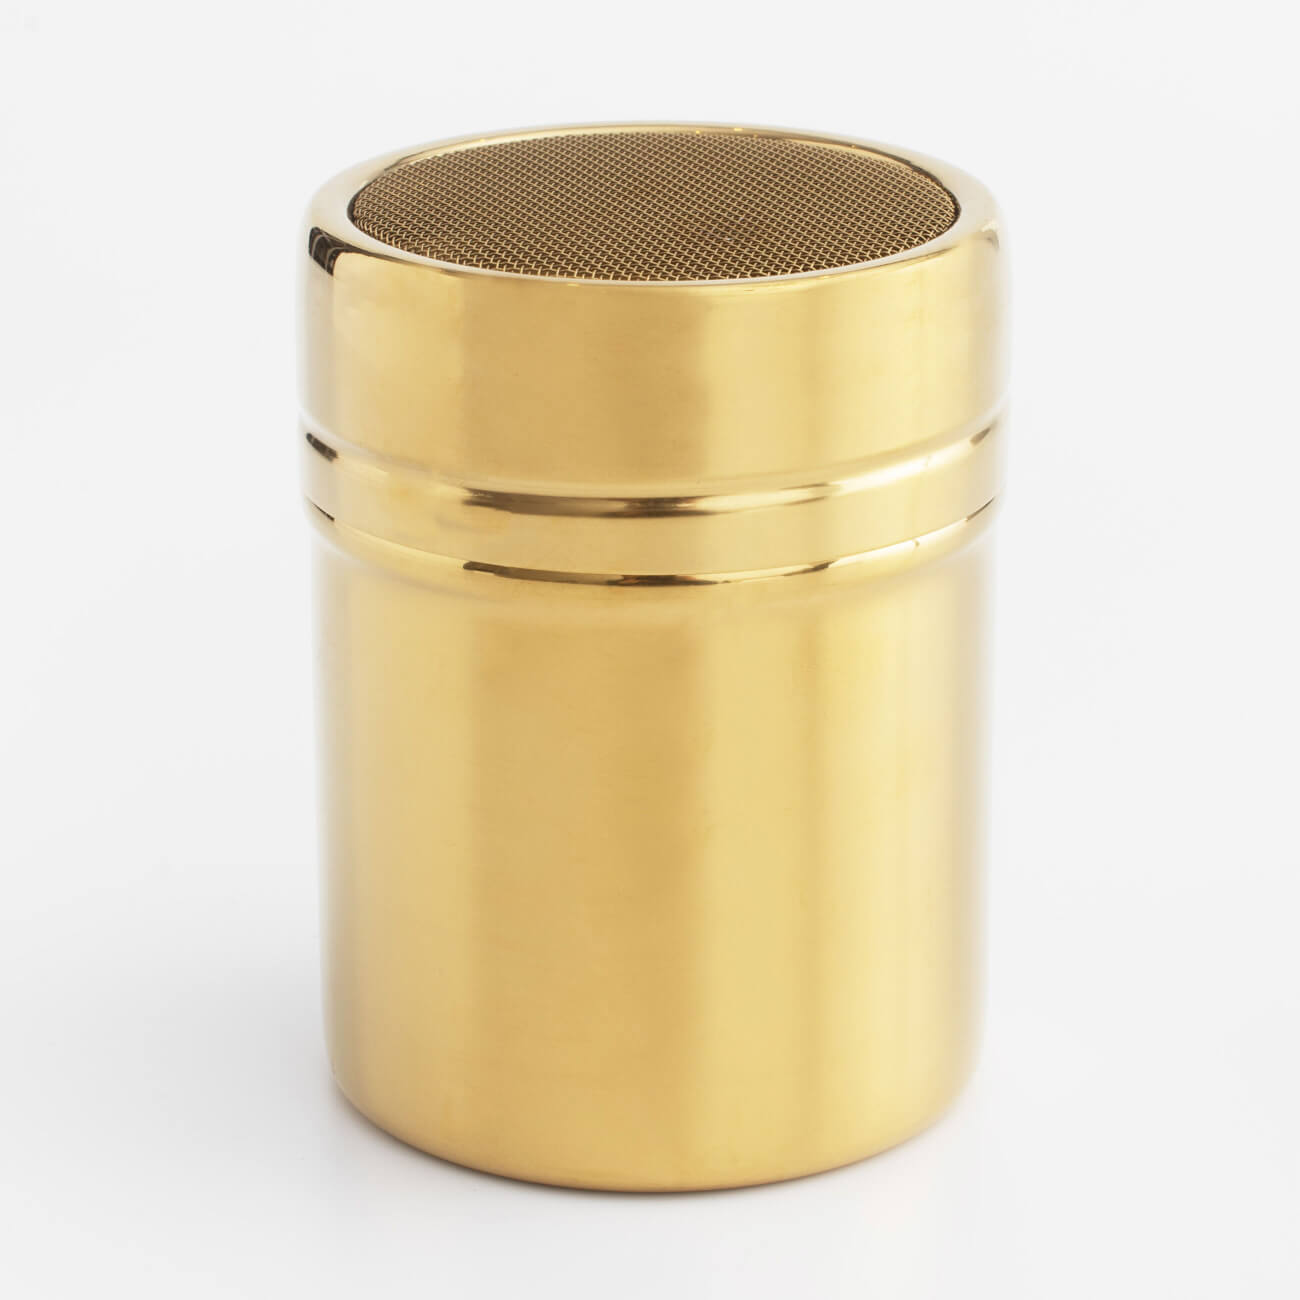 Сито-кружка, 9х7 см, с крышкой, сталь/пластик, золотистое, Classic gold